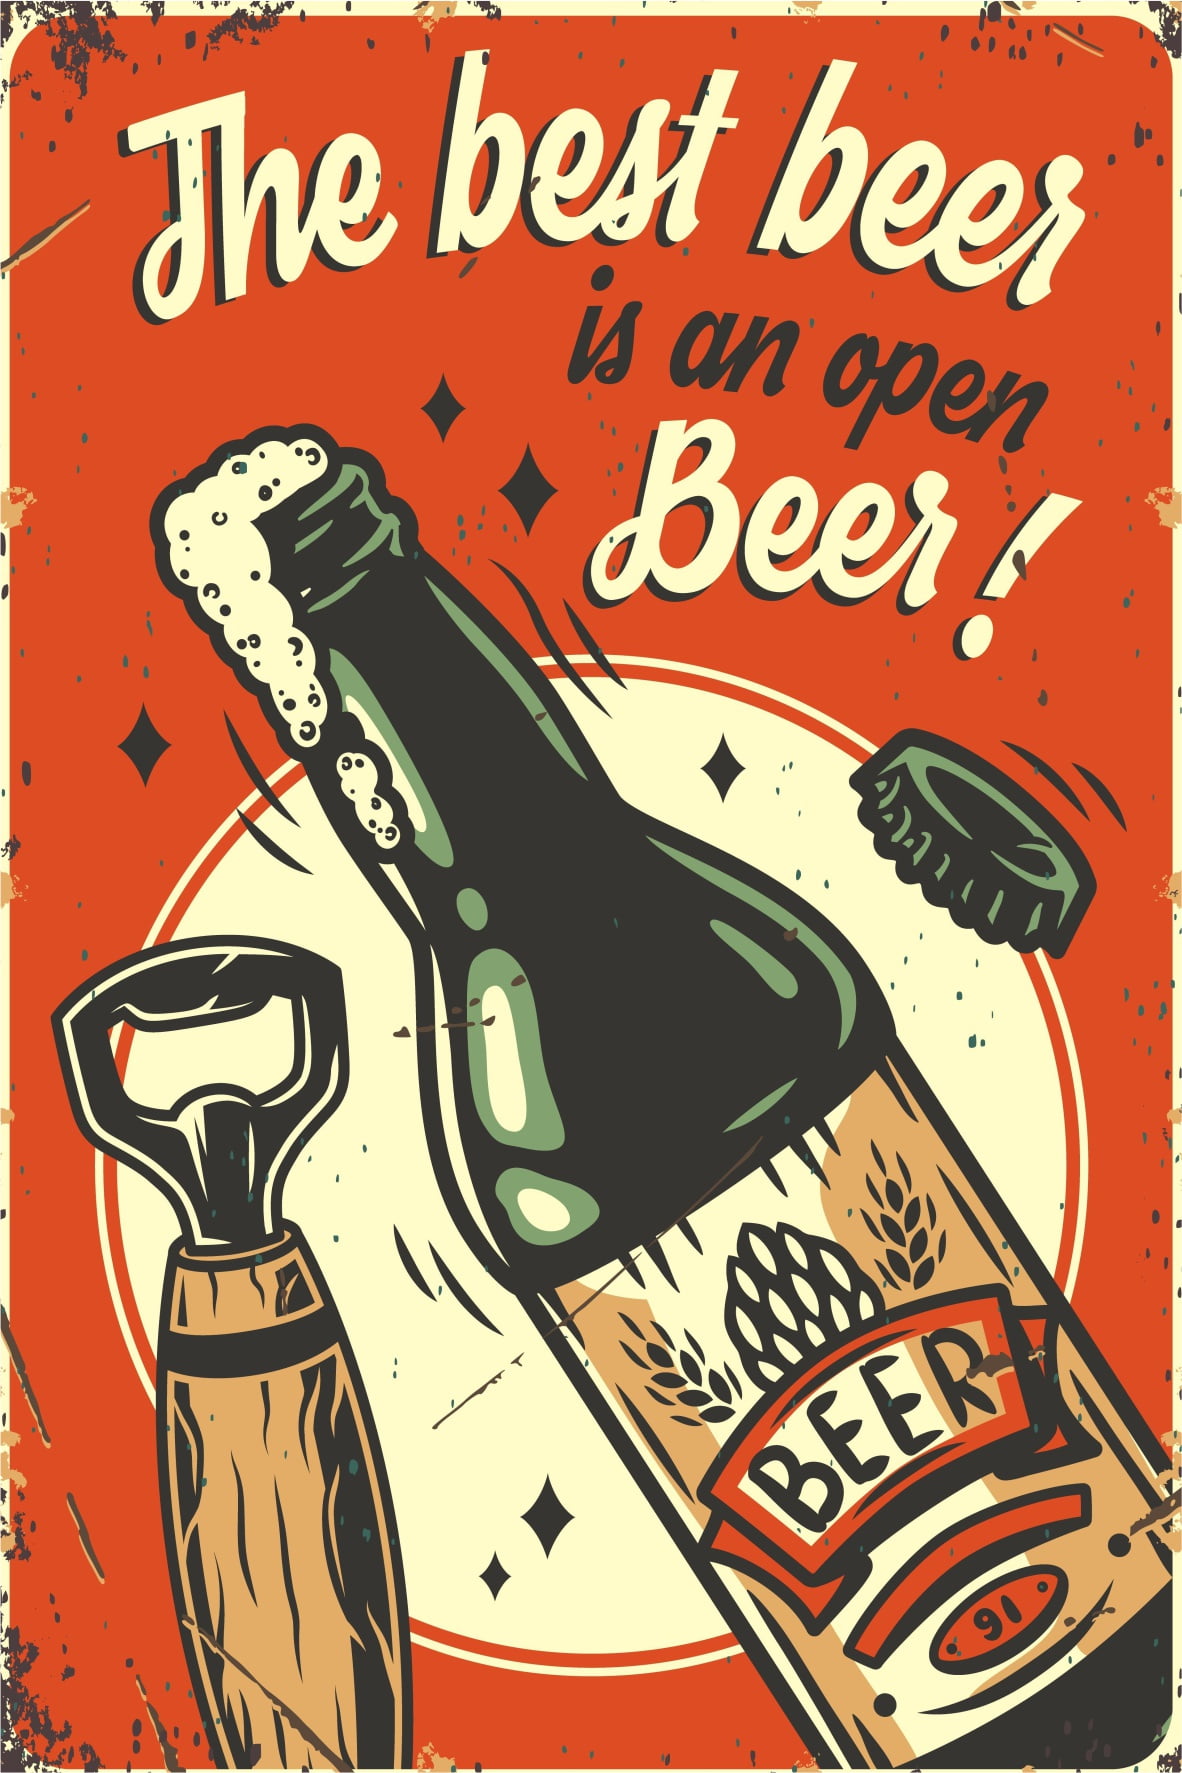 A melhor cerveja, é a cerveja aberta!